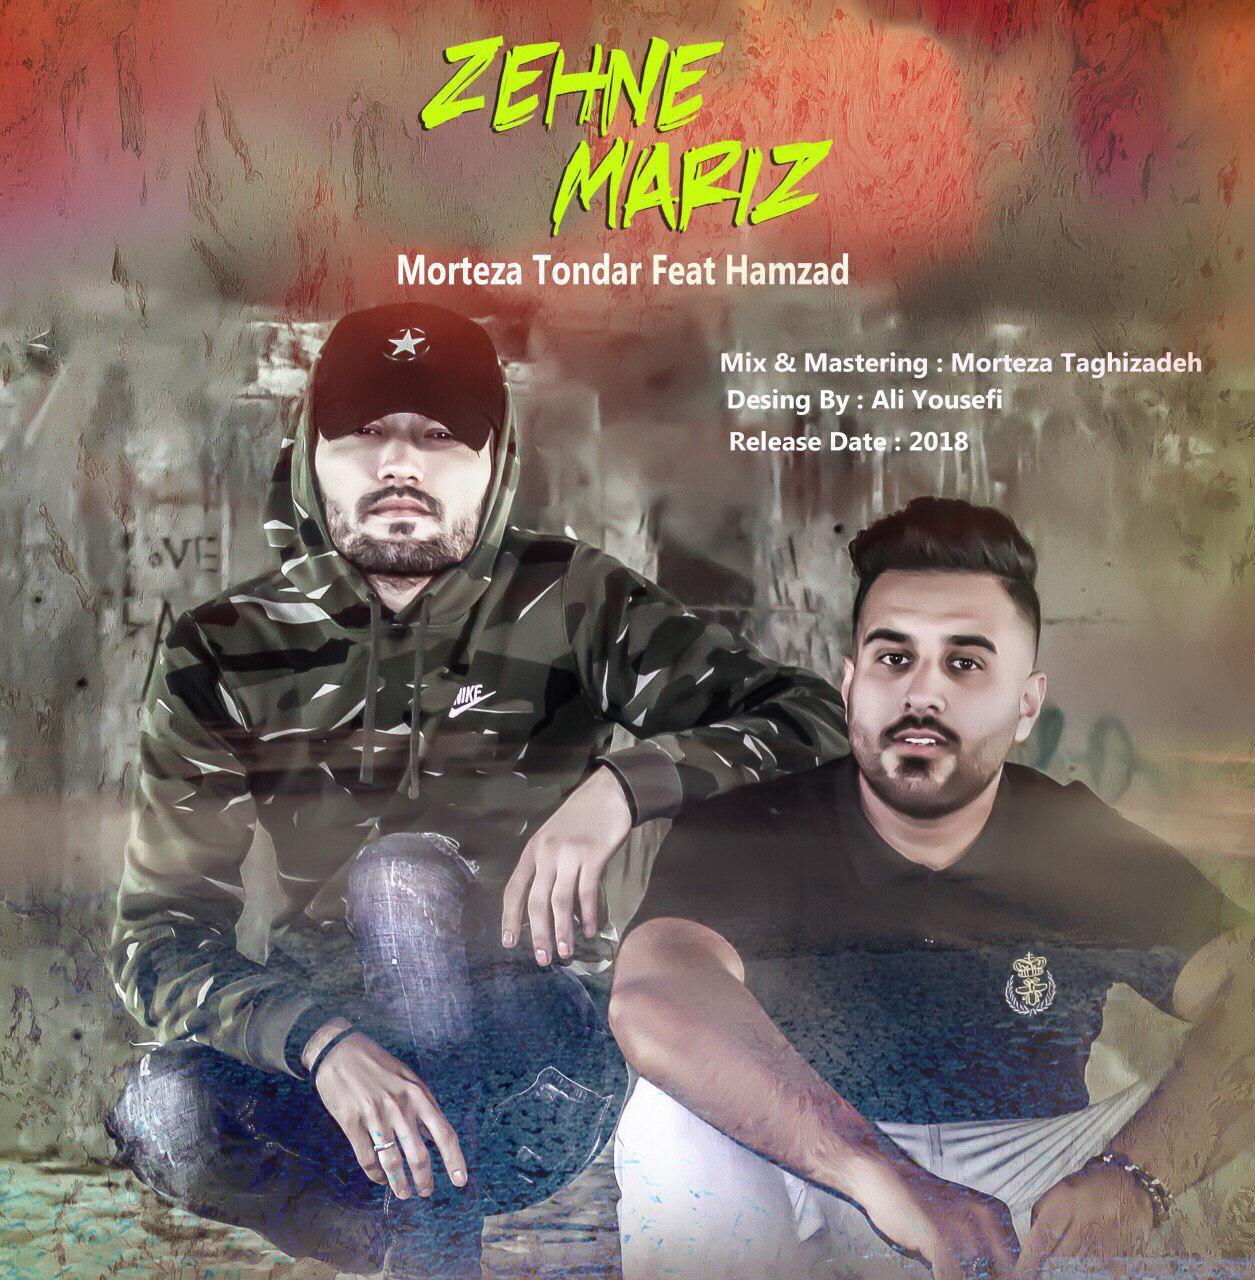 Zehne Mariz (FT Hamzad)